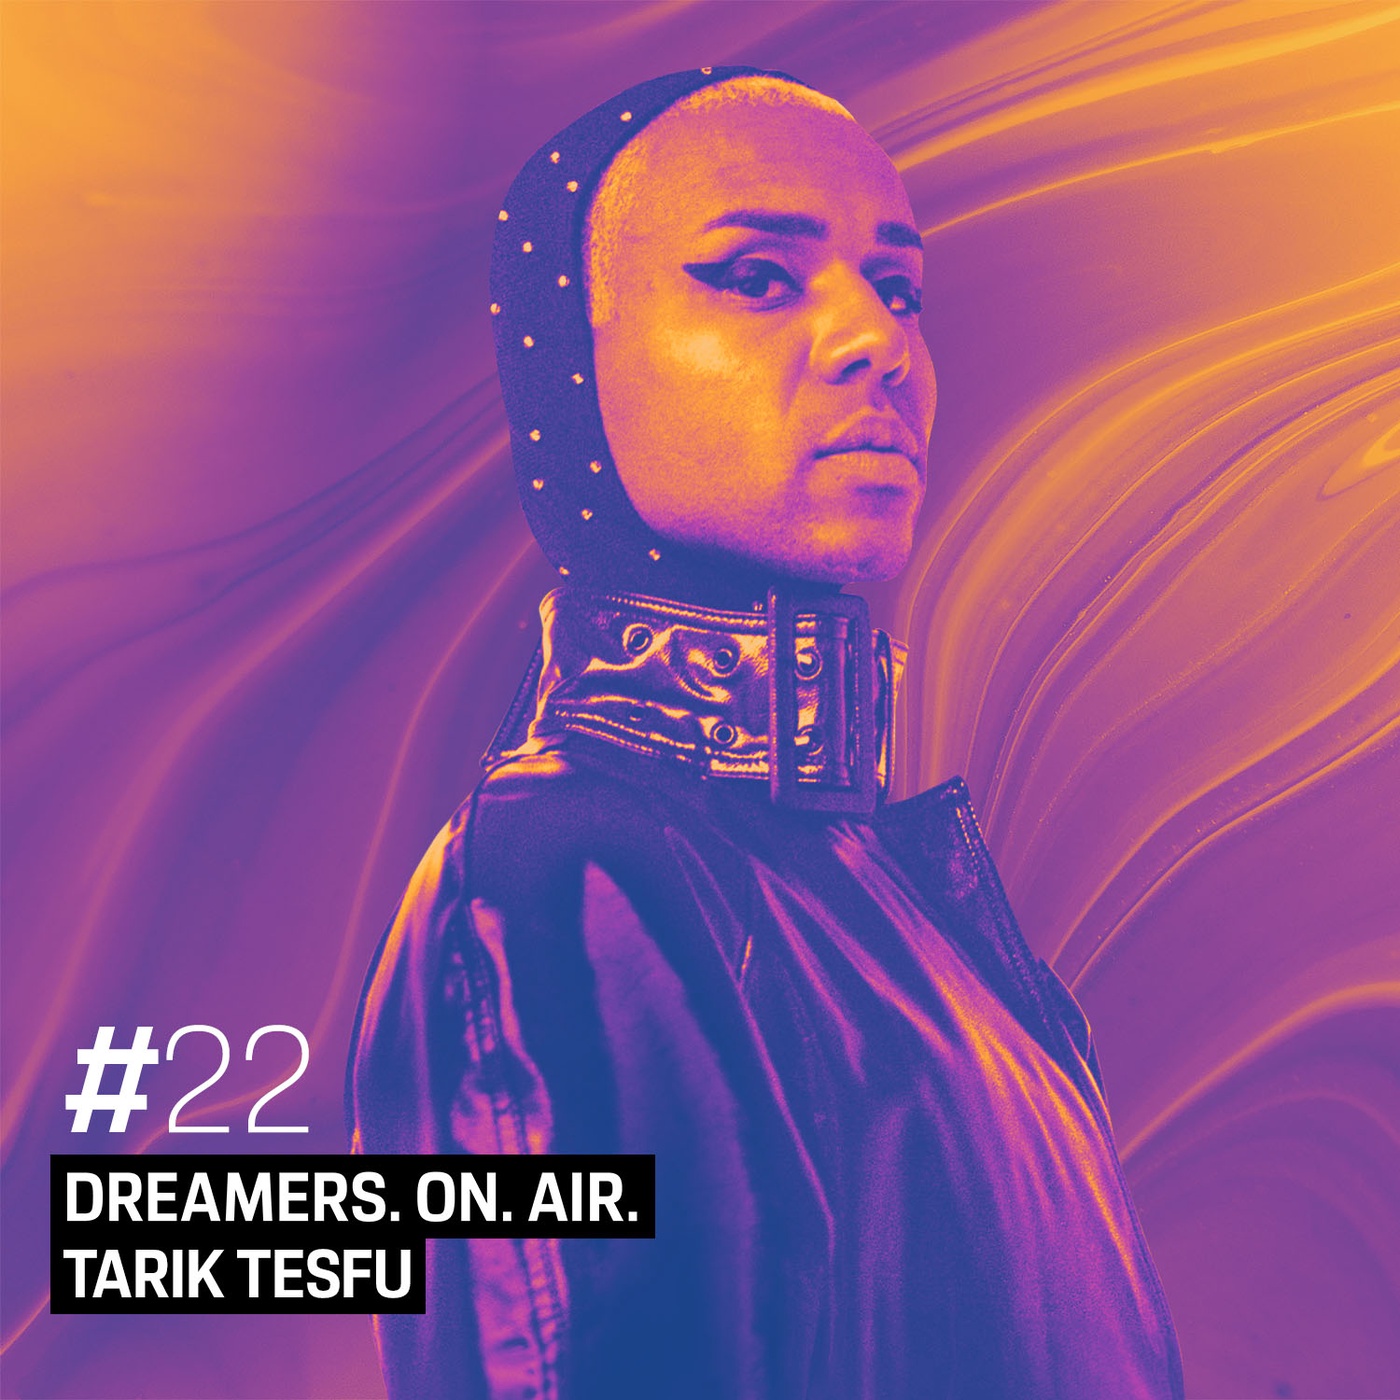 Tarik Tesfu – Jeder sollte sich die größten Ziele und Träume setzen.